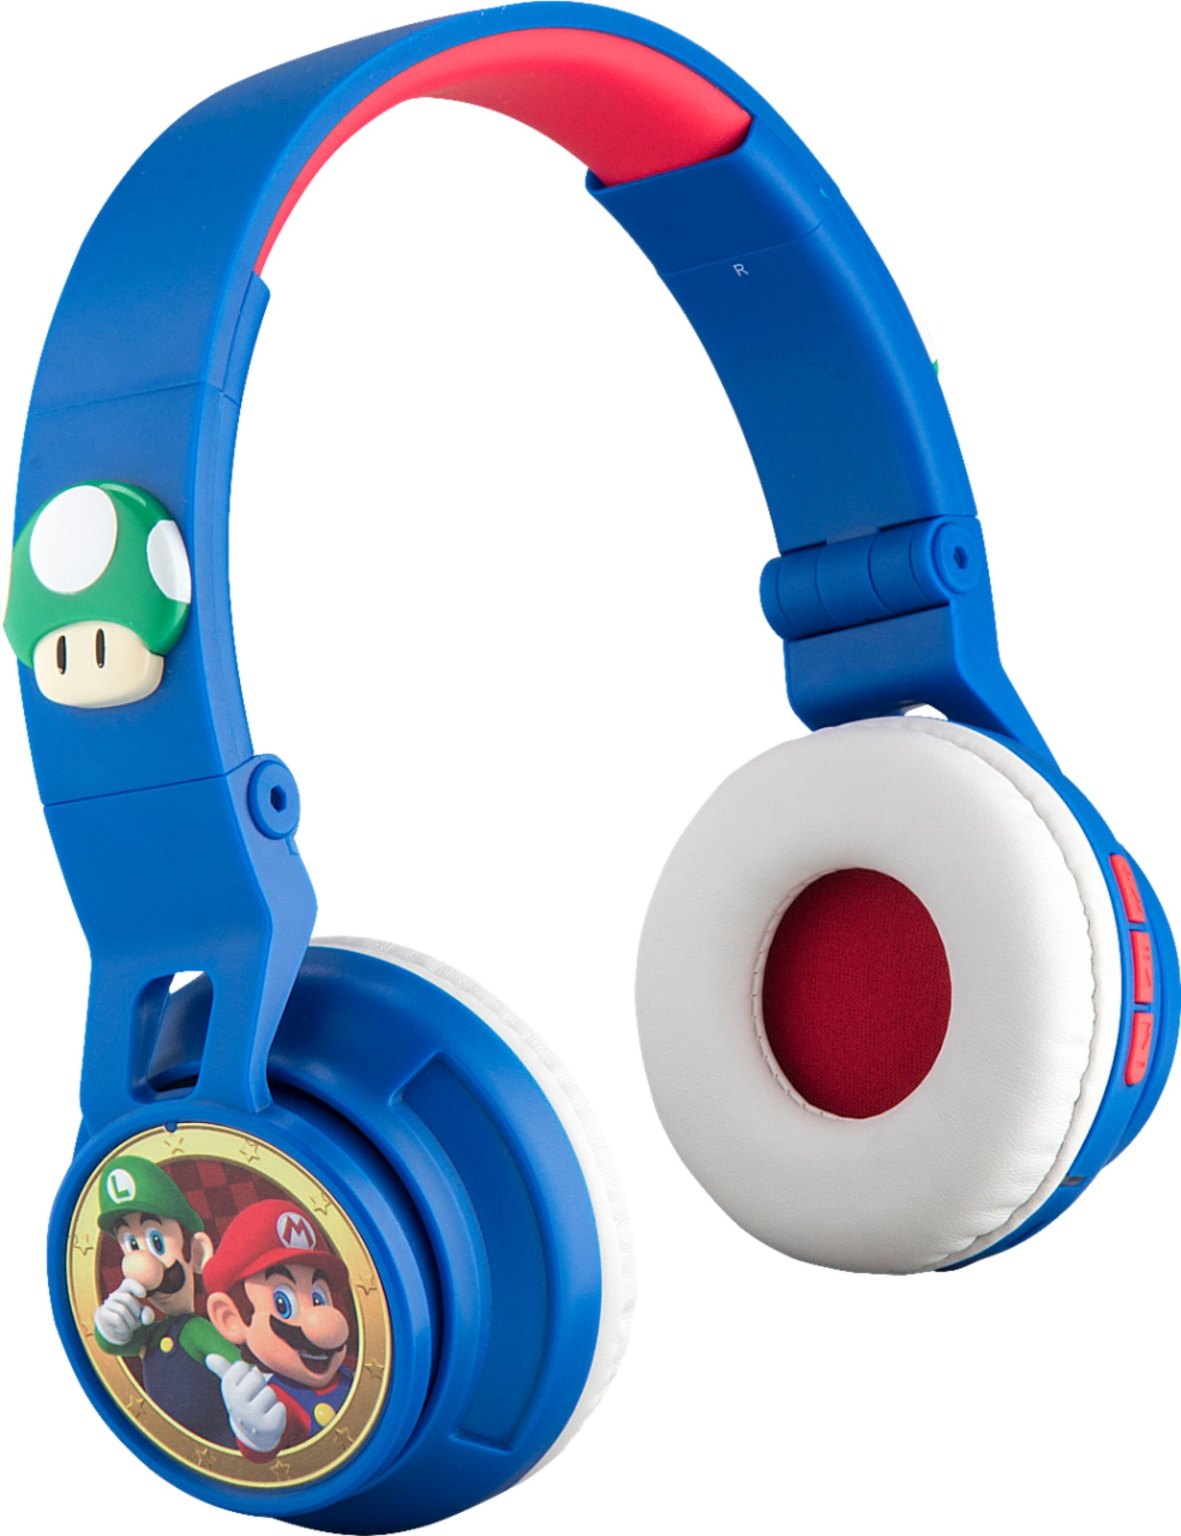 Ekids Super Mario Wireless Over The Ear Headphones